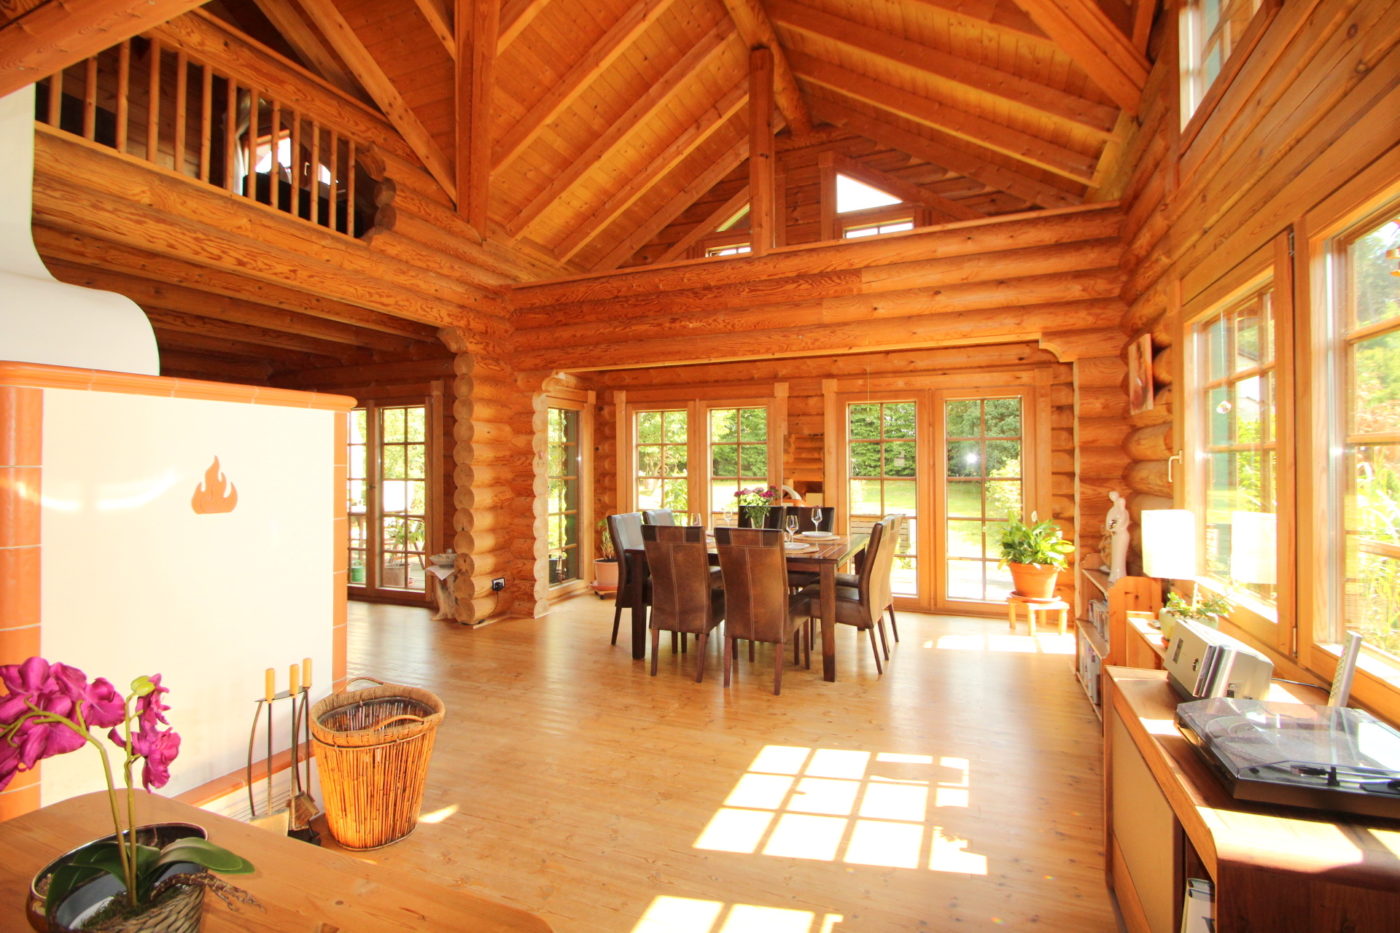 Wohnzimmer in einem Holzhaus am Möhnesee. Verkauft über Blickfang Immobilien und Homestaging in Soest